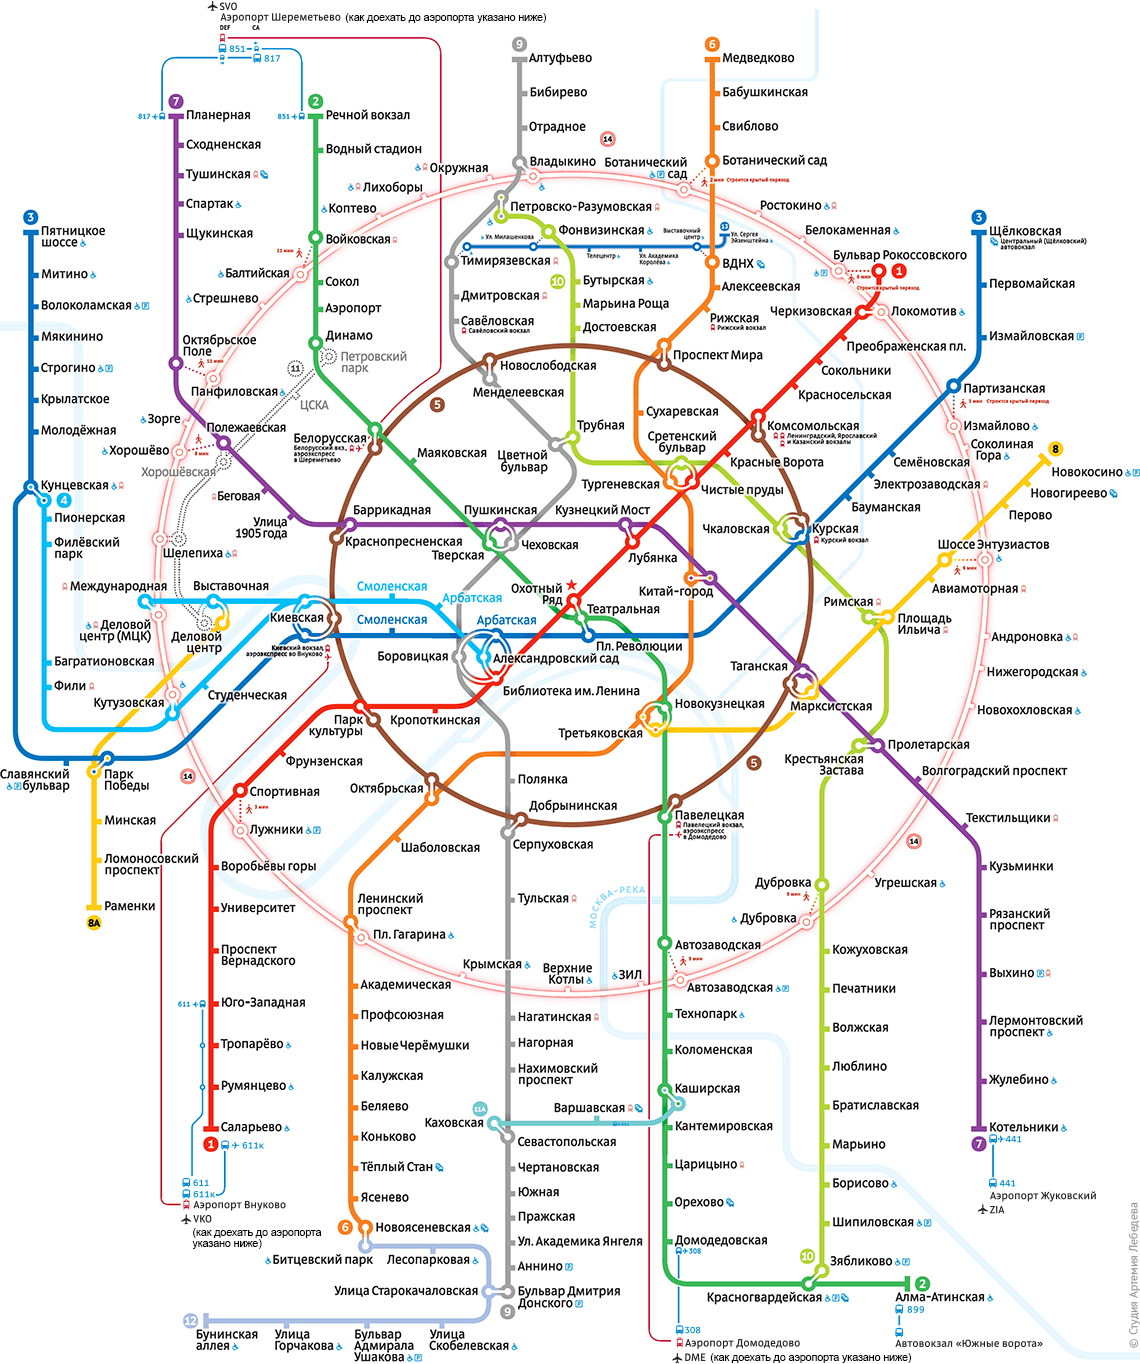 Скачать схему метро москвы 2018 на компьютер